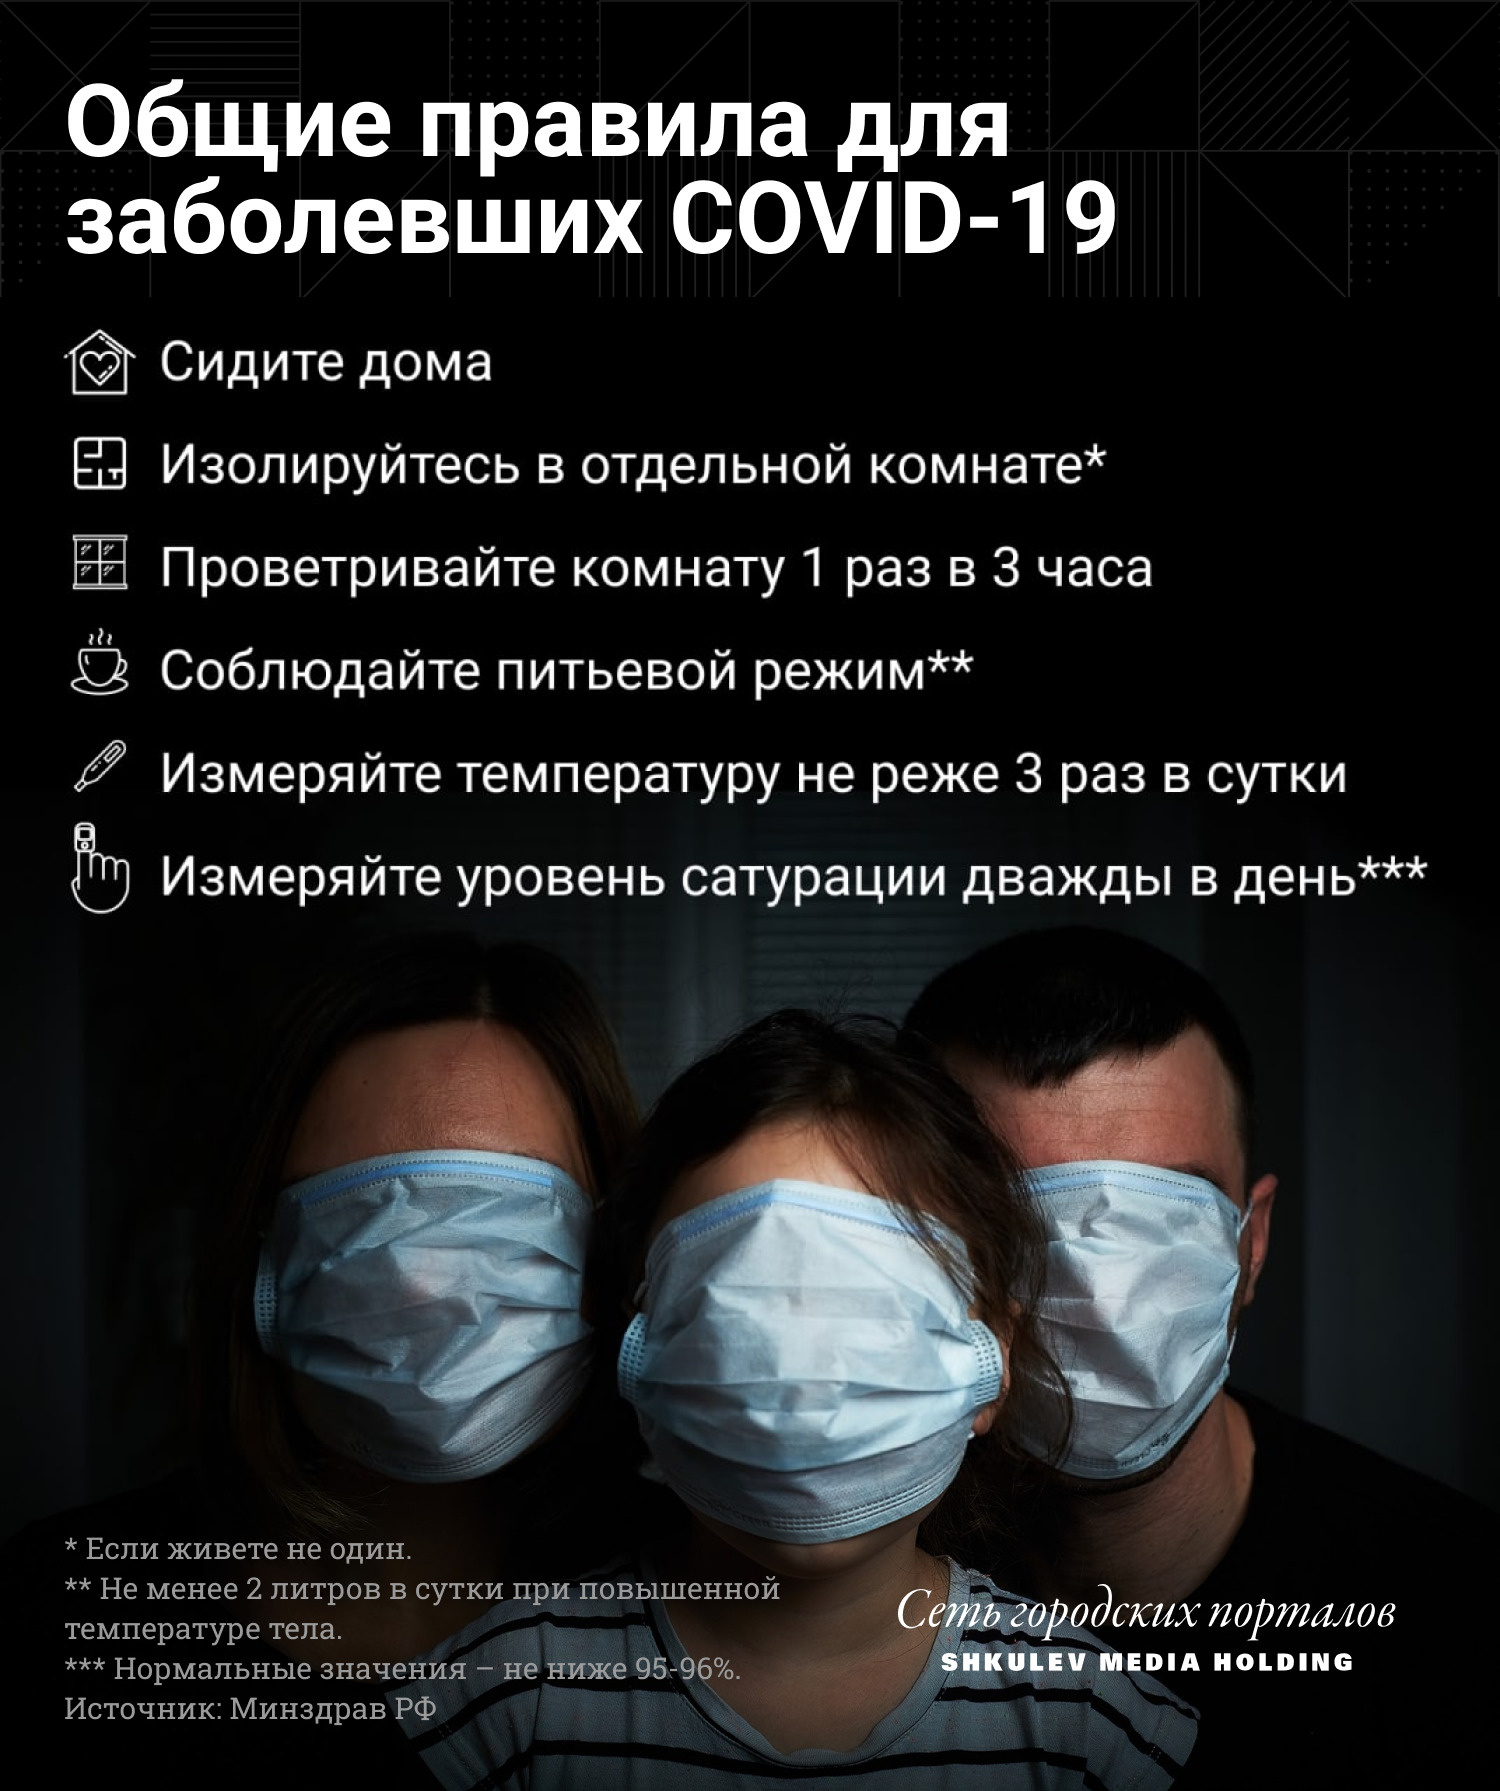 Главные правила при коронавирусе для всех без исключения